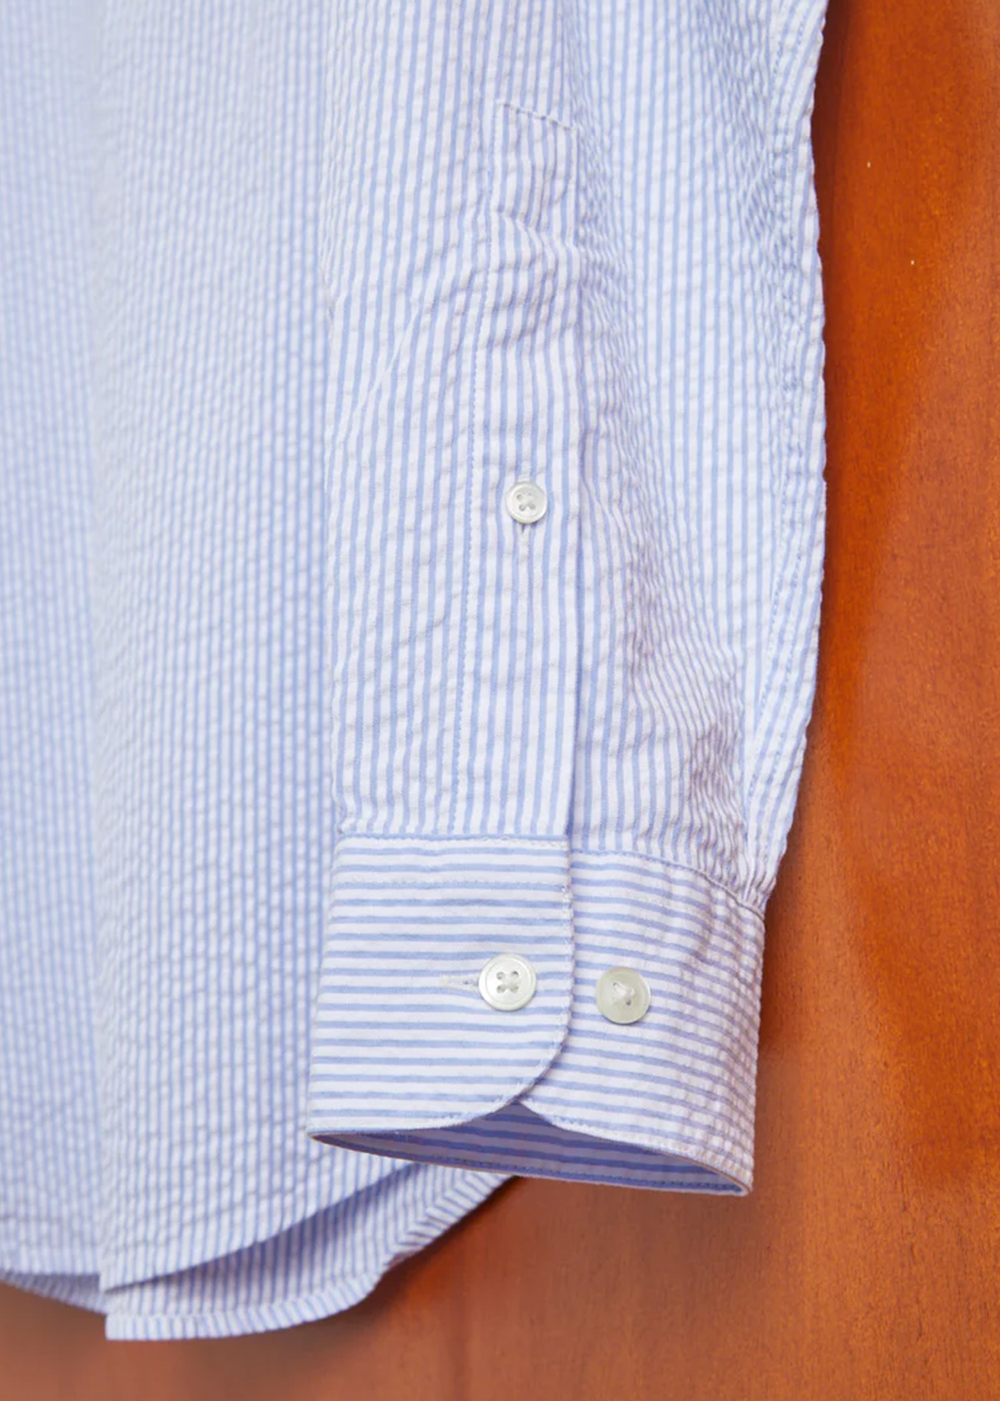 Atlantico Stripe Shirt - Blue - Portuguese Flannel Canada - Danali